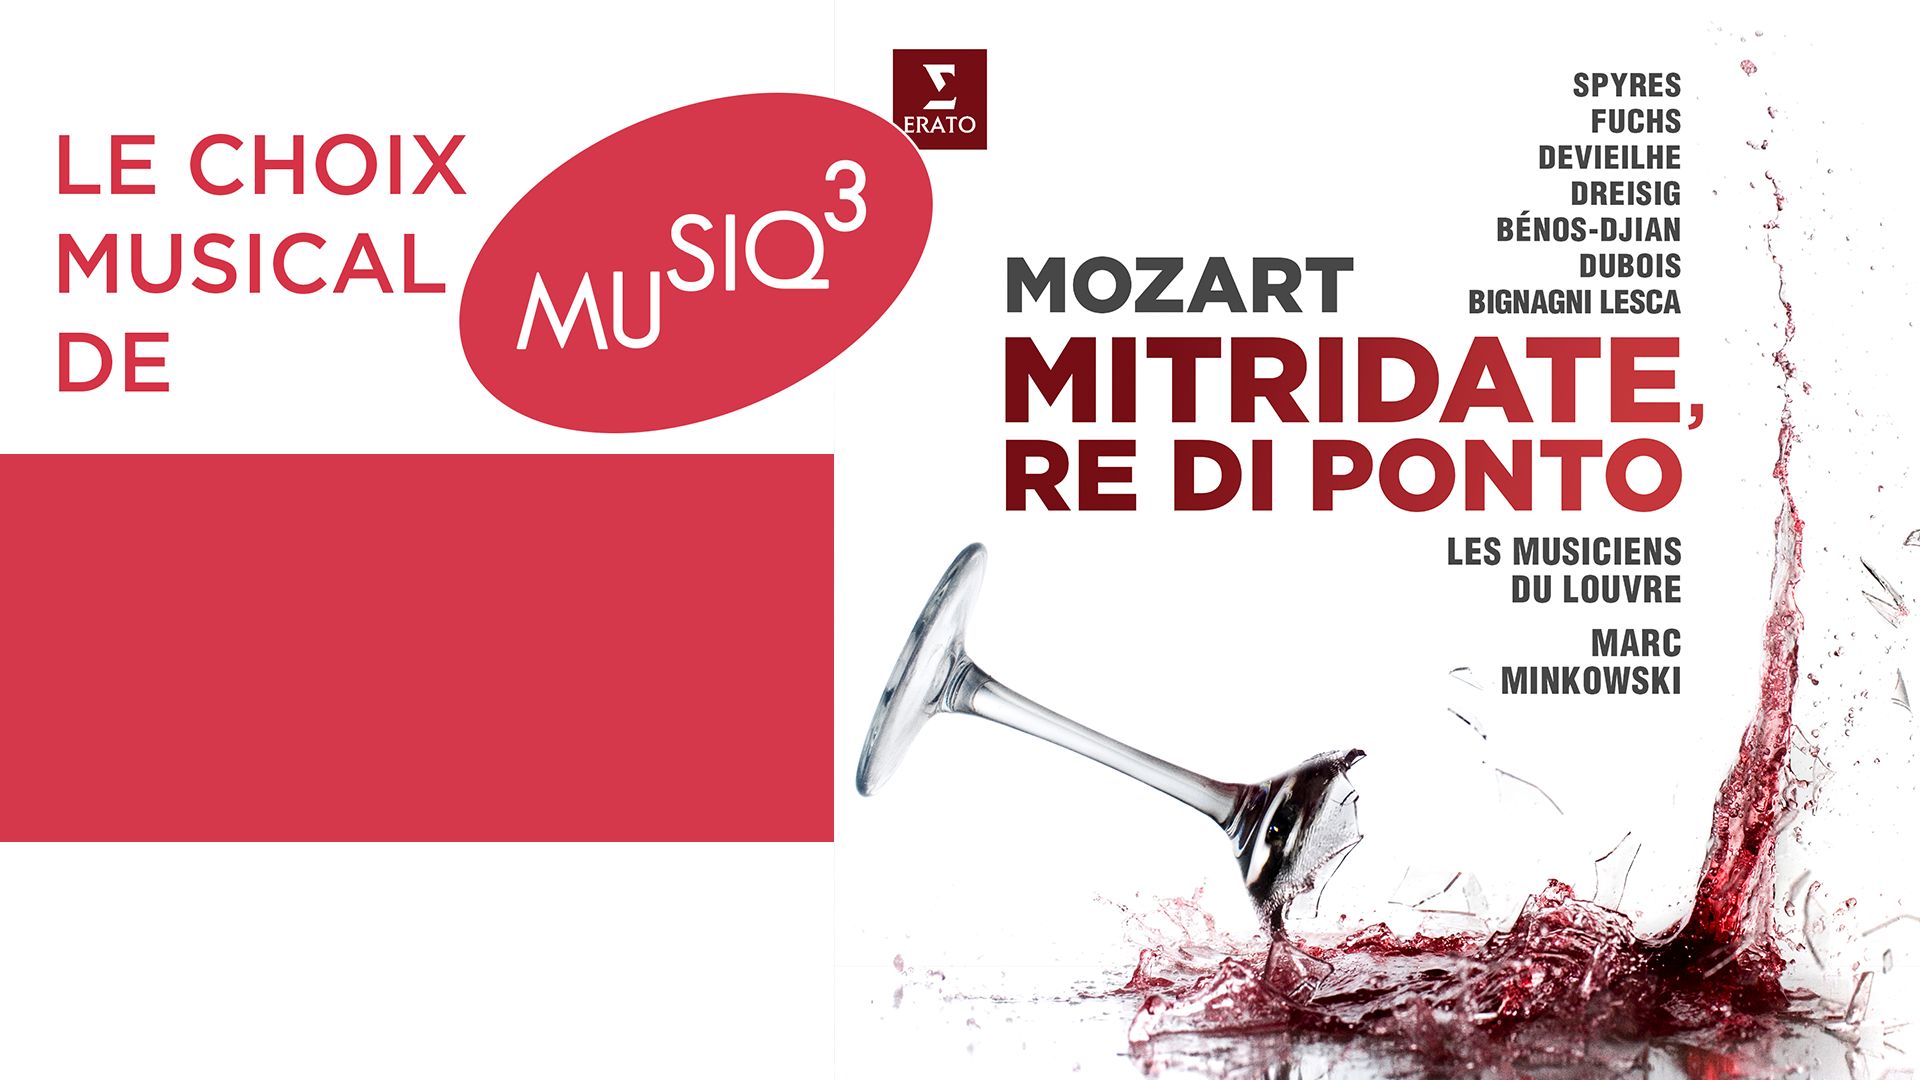 "Mitridate, Re di Ponto", un opéra de jeunesse de Mozart par Marc Minkowski et les Musiciens du Louvre